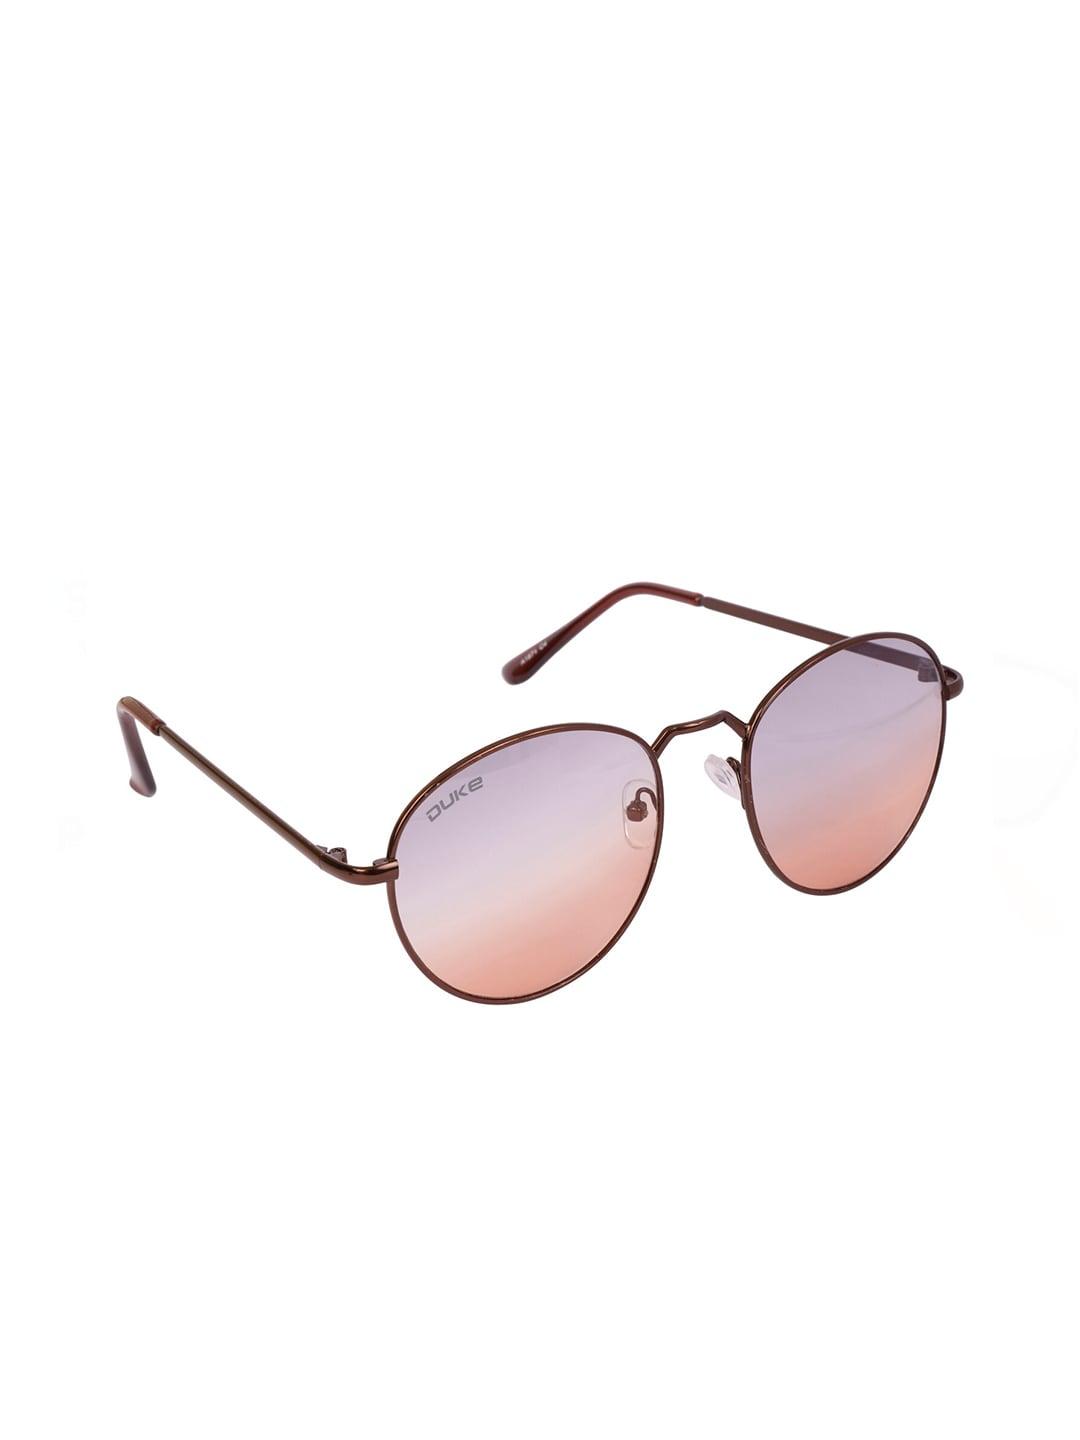 duke-women-mirrored-lens-&-brown-full-rim-oval-sunglasses